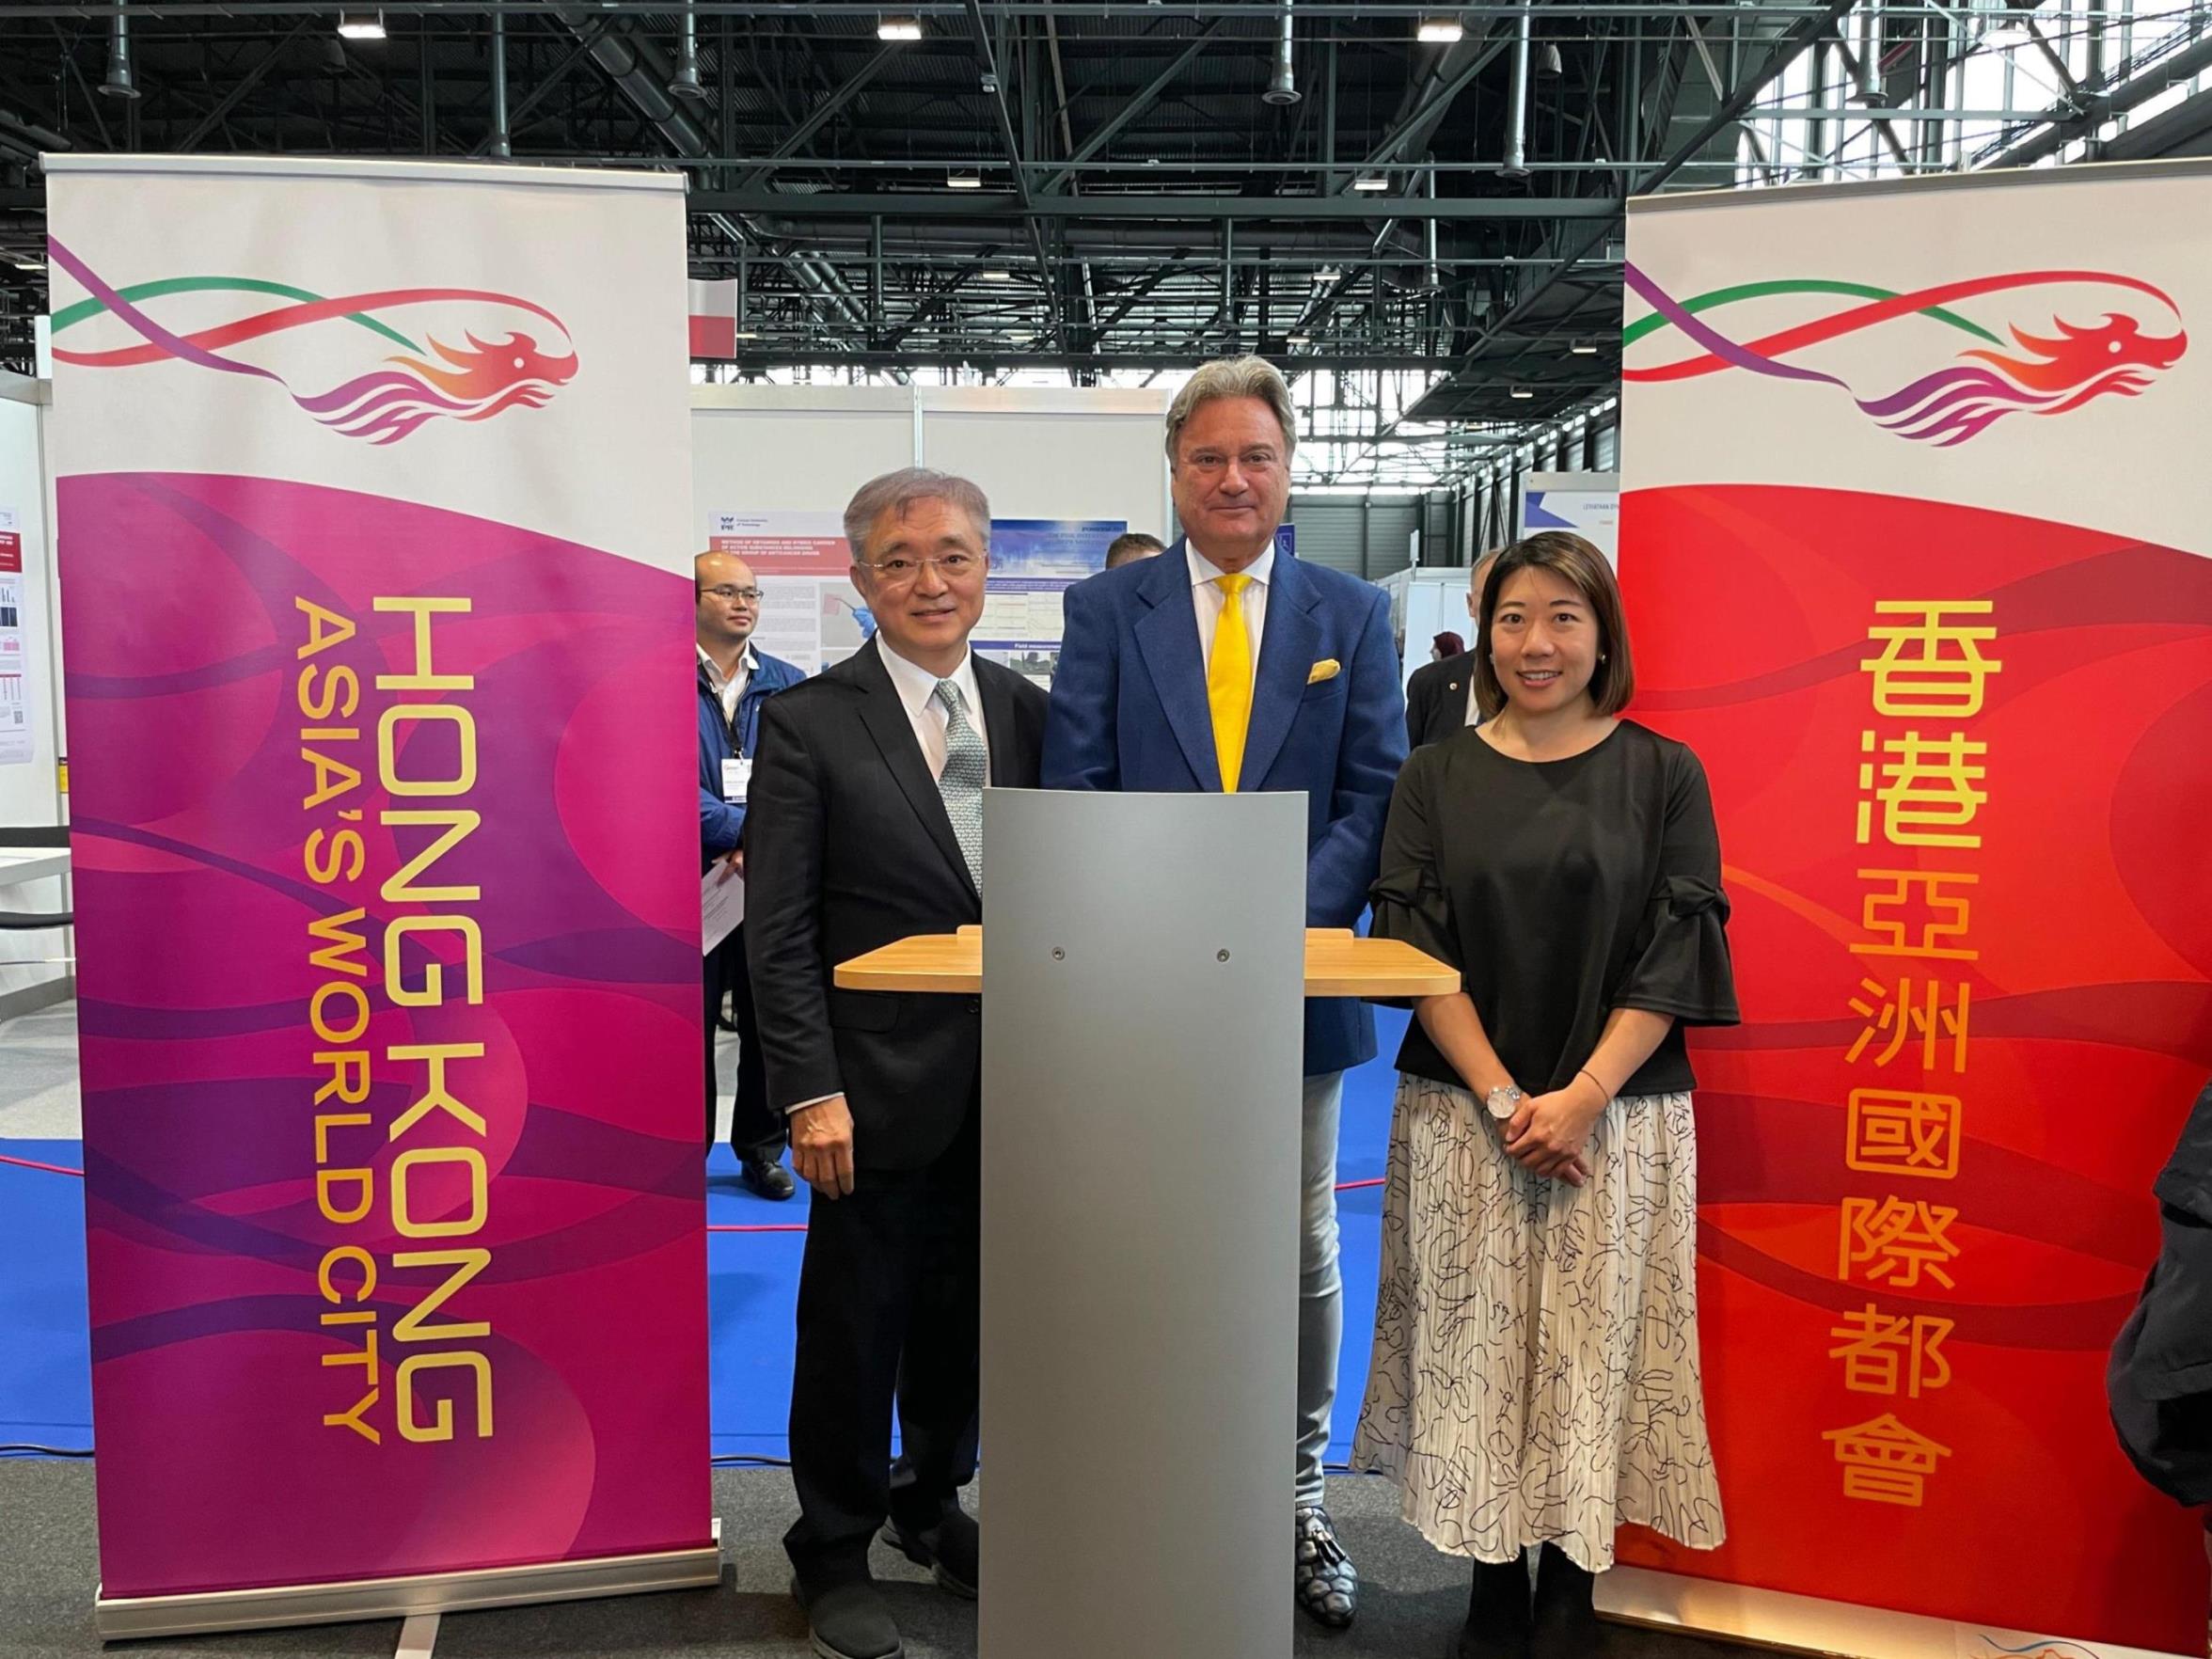 Hongkong präsentiert Innovationen auf der internationalen Erfindungsmesse in Genf